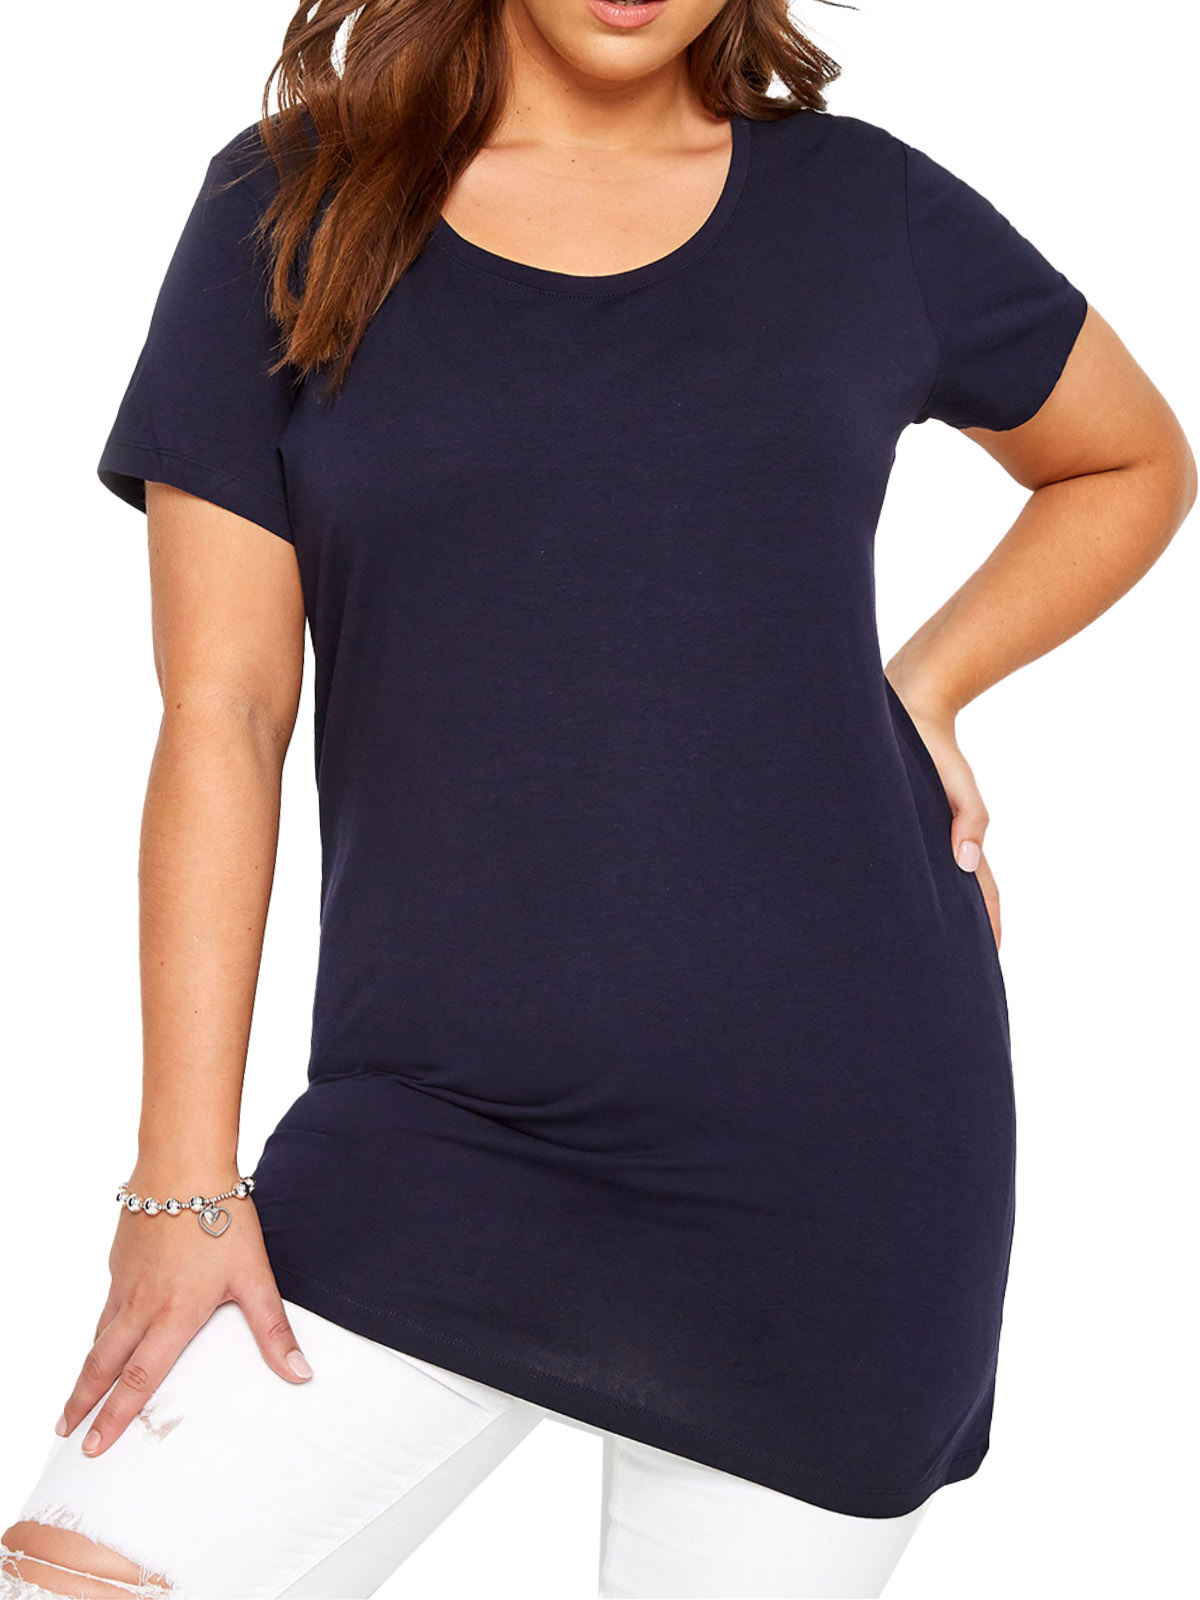 CURVE - - Curve NAVY Longline T-Shirt - Plus Size 14 to 38/40